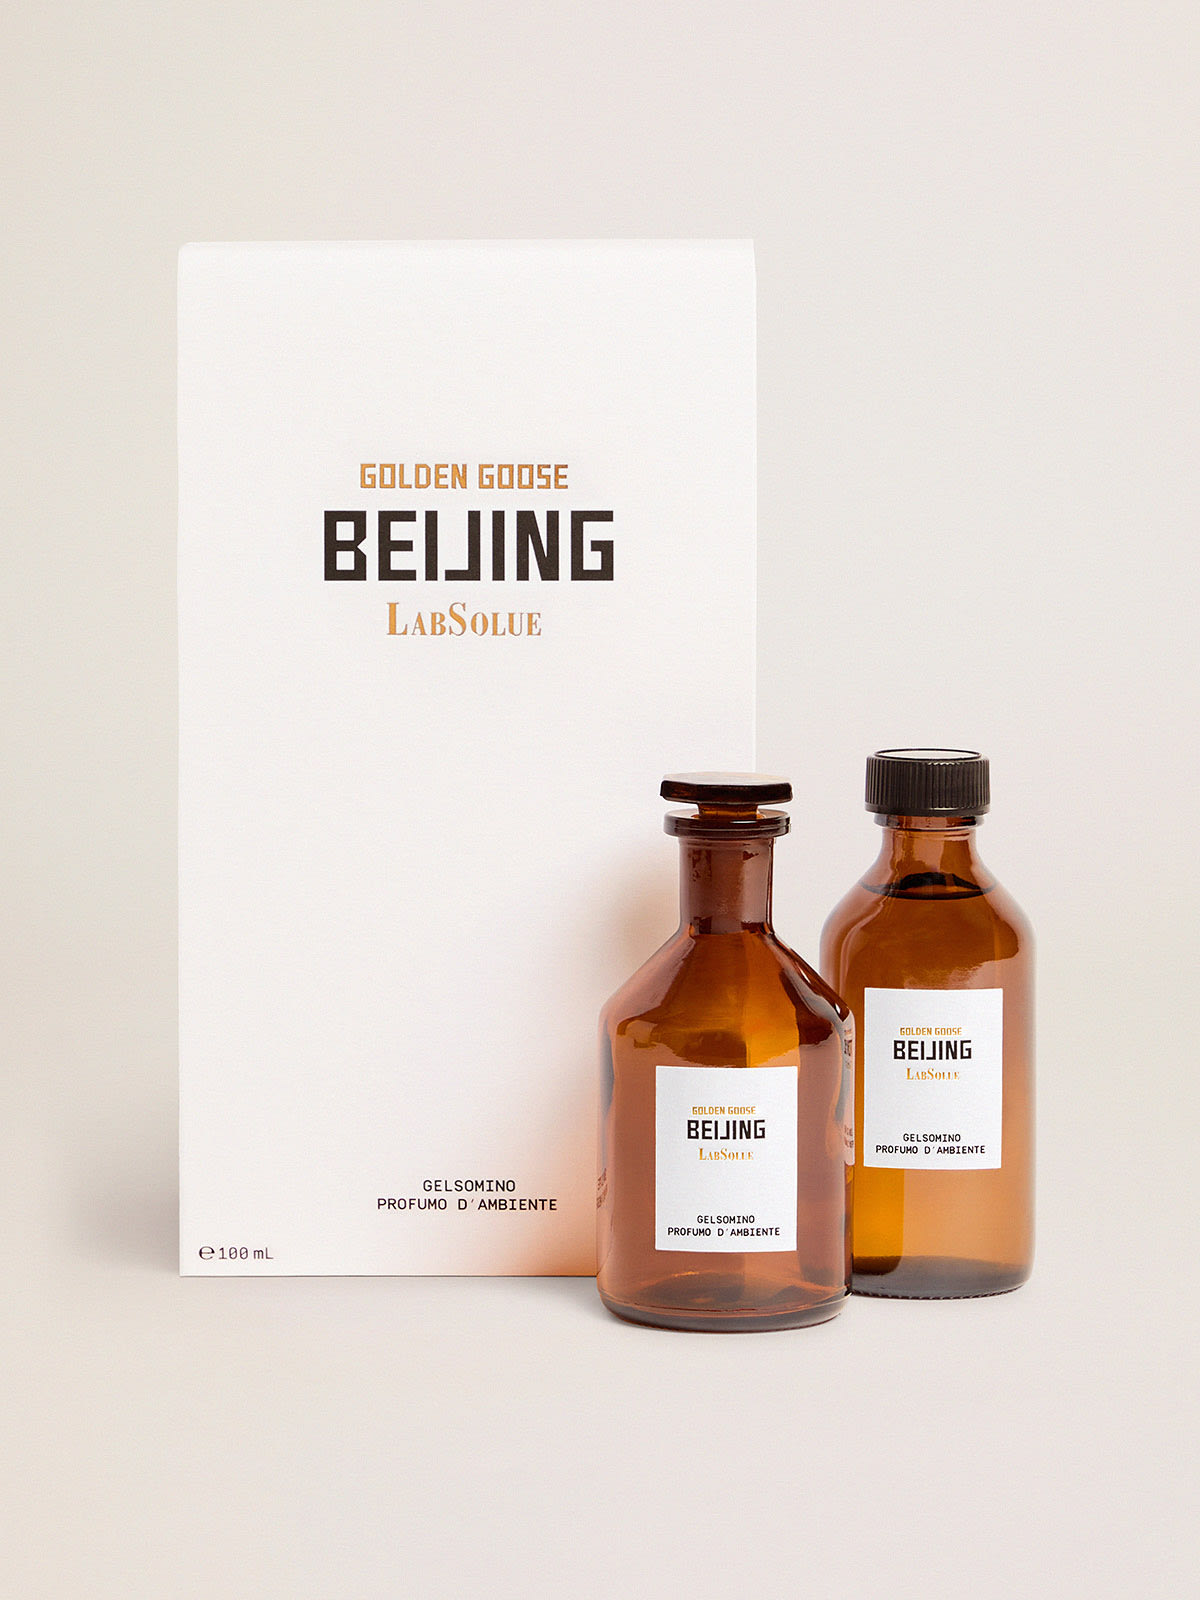 Golden Goose - Beijing Essence Gelsomino Fragranza d'ambiente 100 ml in 